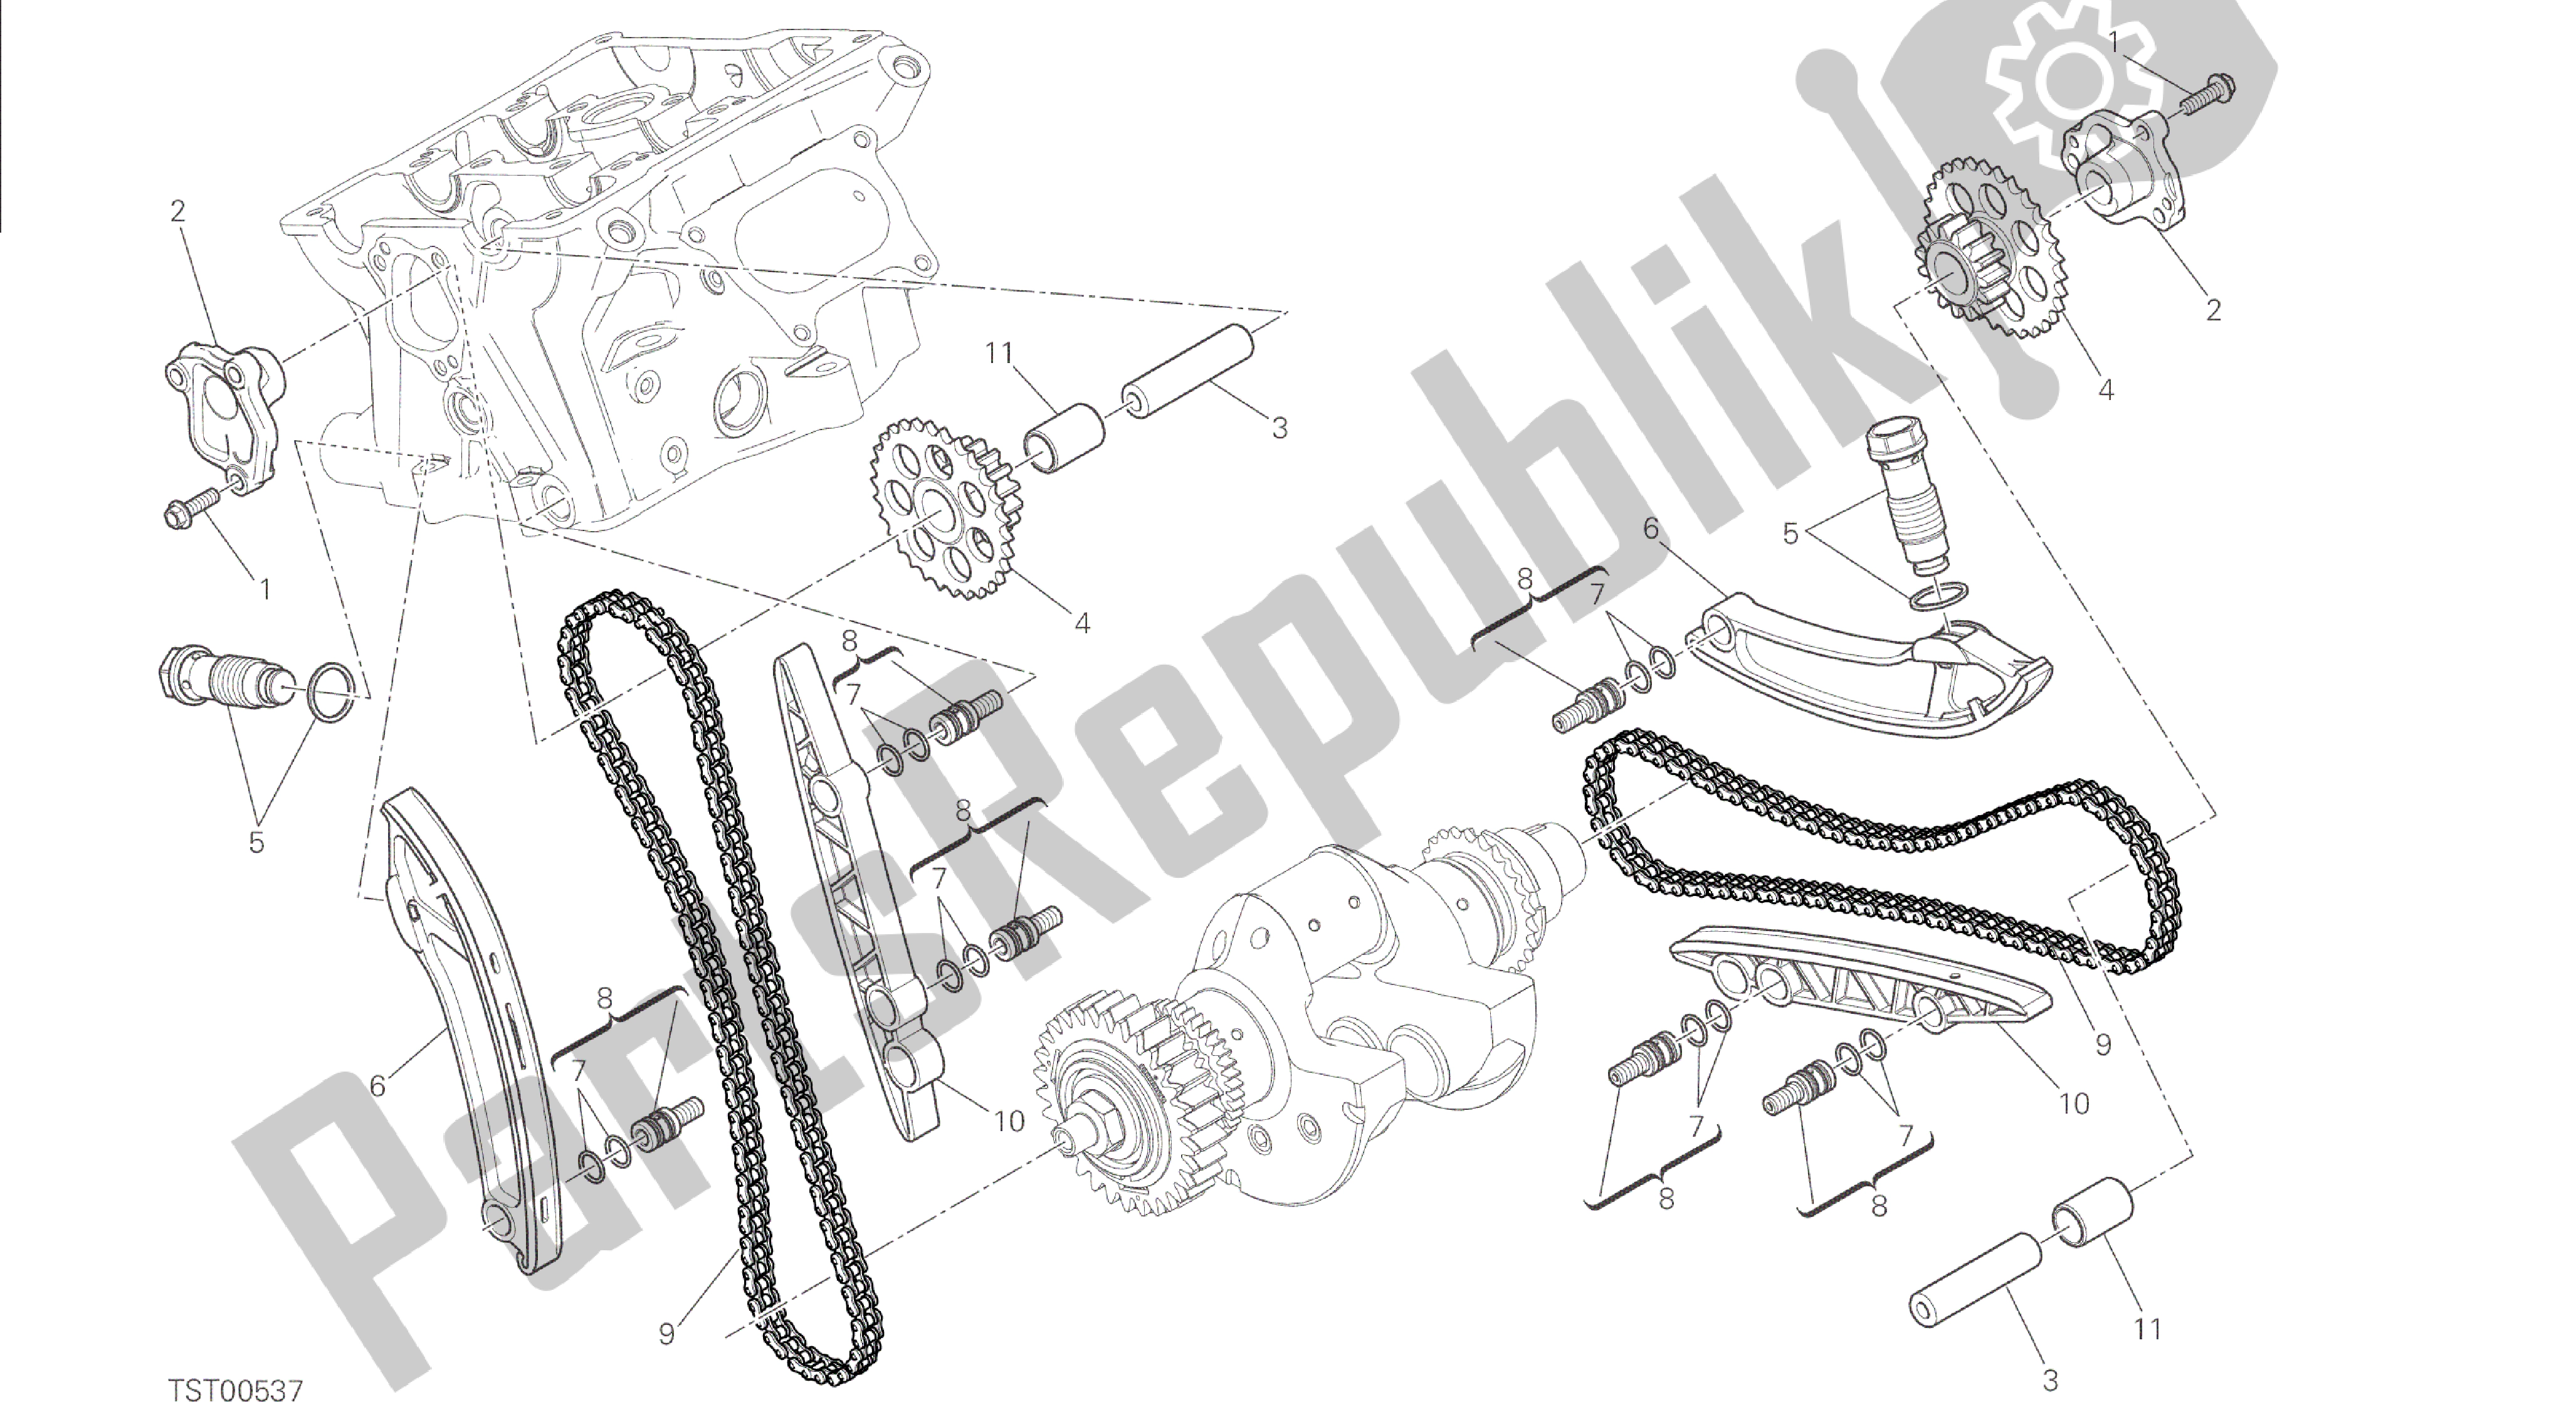 Alle onderdelen voor de Tekening 008 - Distribuzione [mod: 1299; Xst: Aus, Eur, Fra, Jap, Twn] Groep Engine van de Ducati Panigale 1299 2015